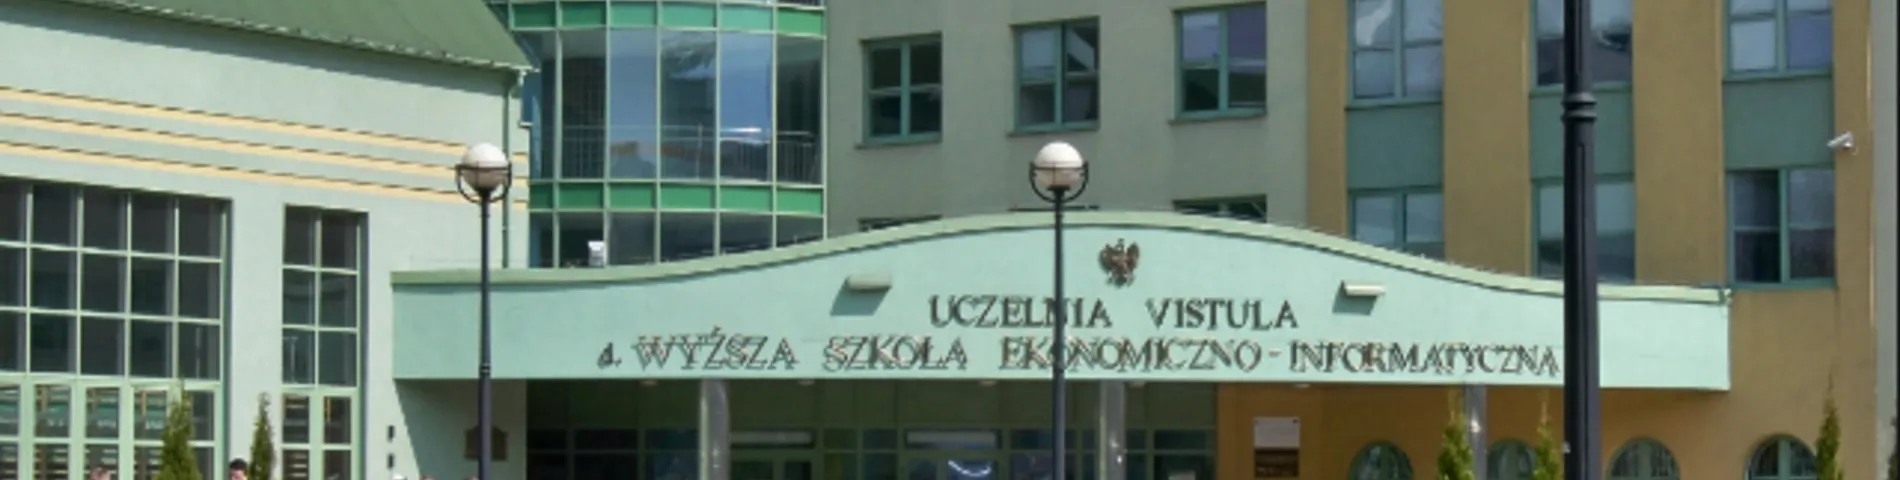 Vistula University obrazek 1